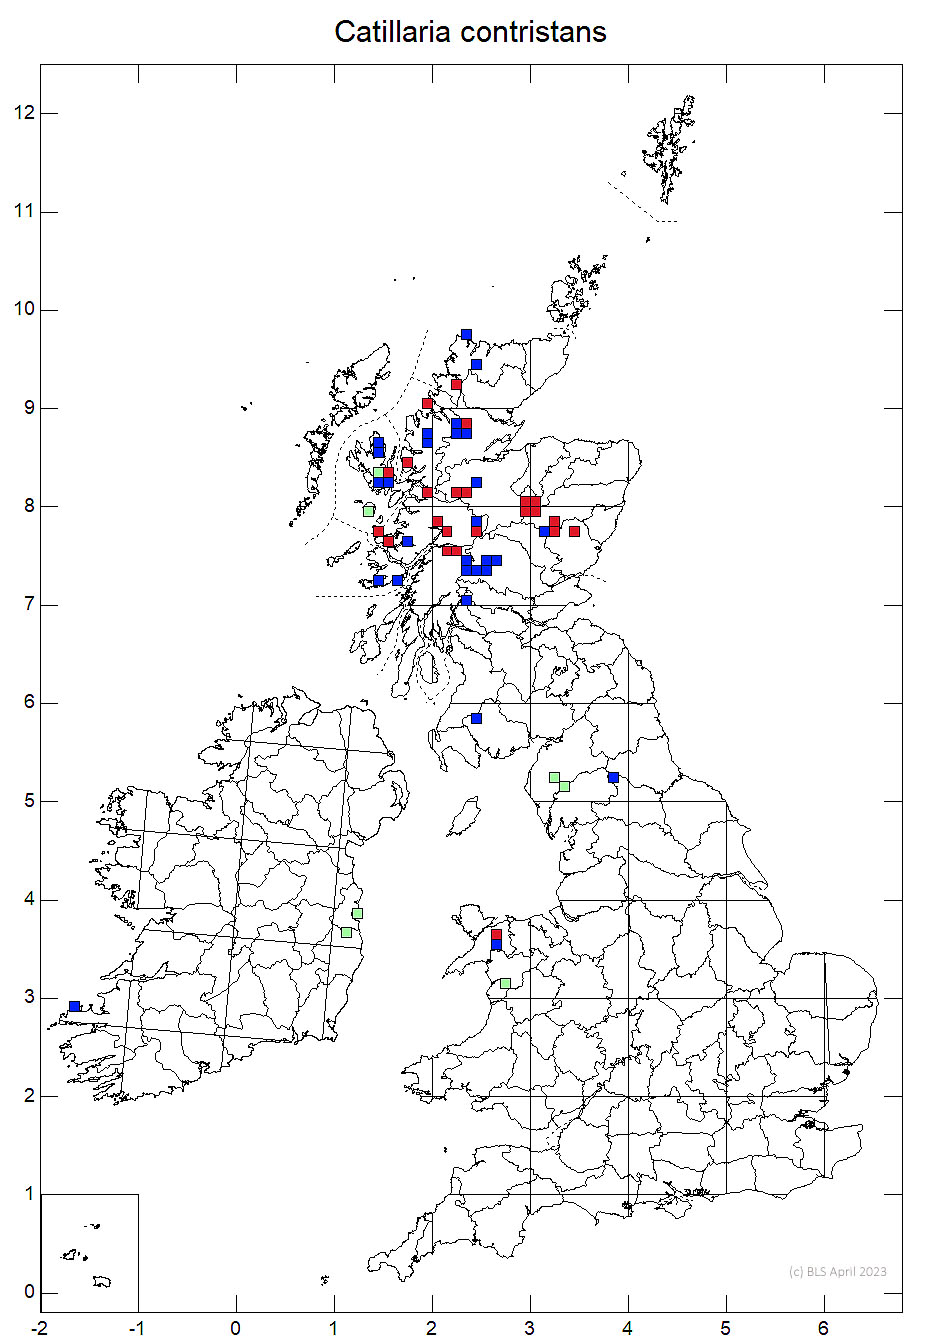 Catillaria contristans 10km sq distribution map